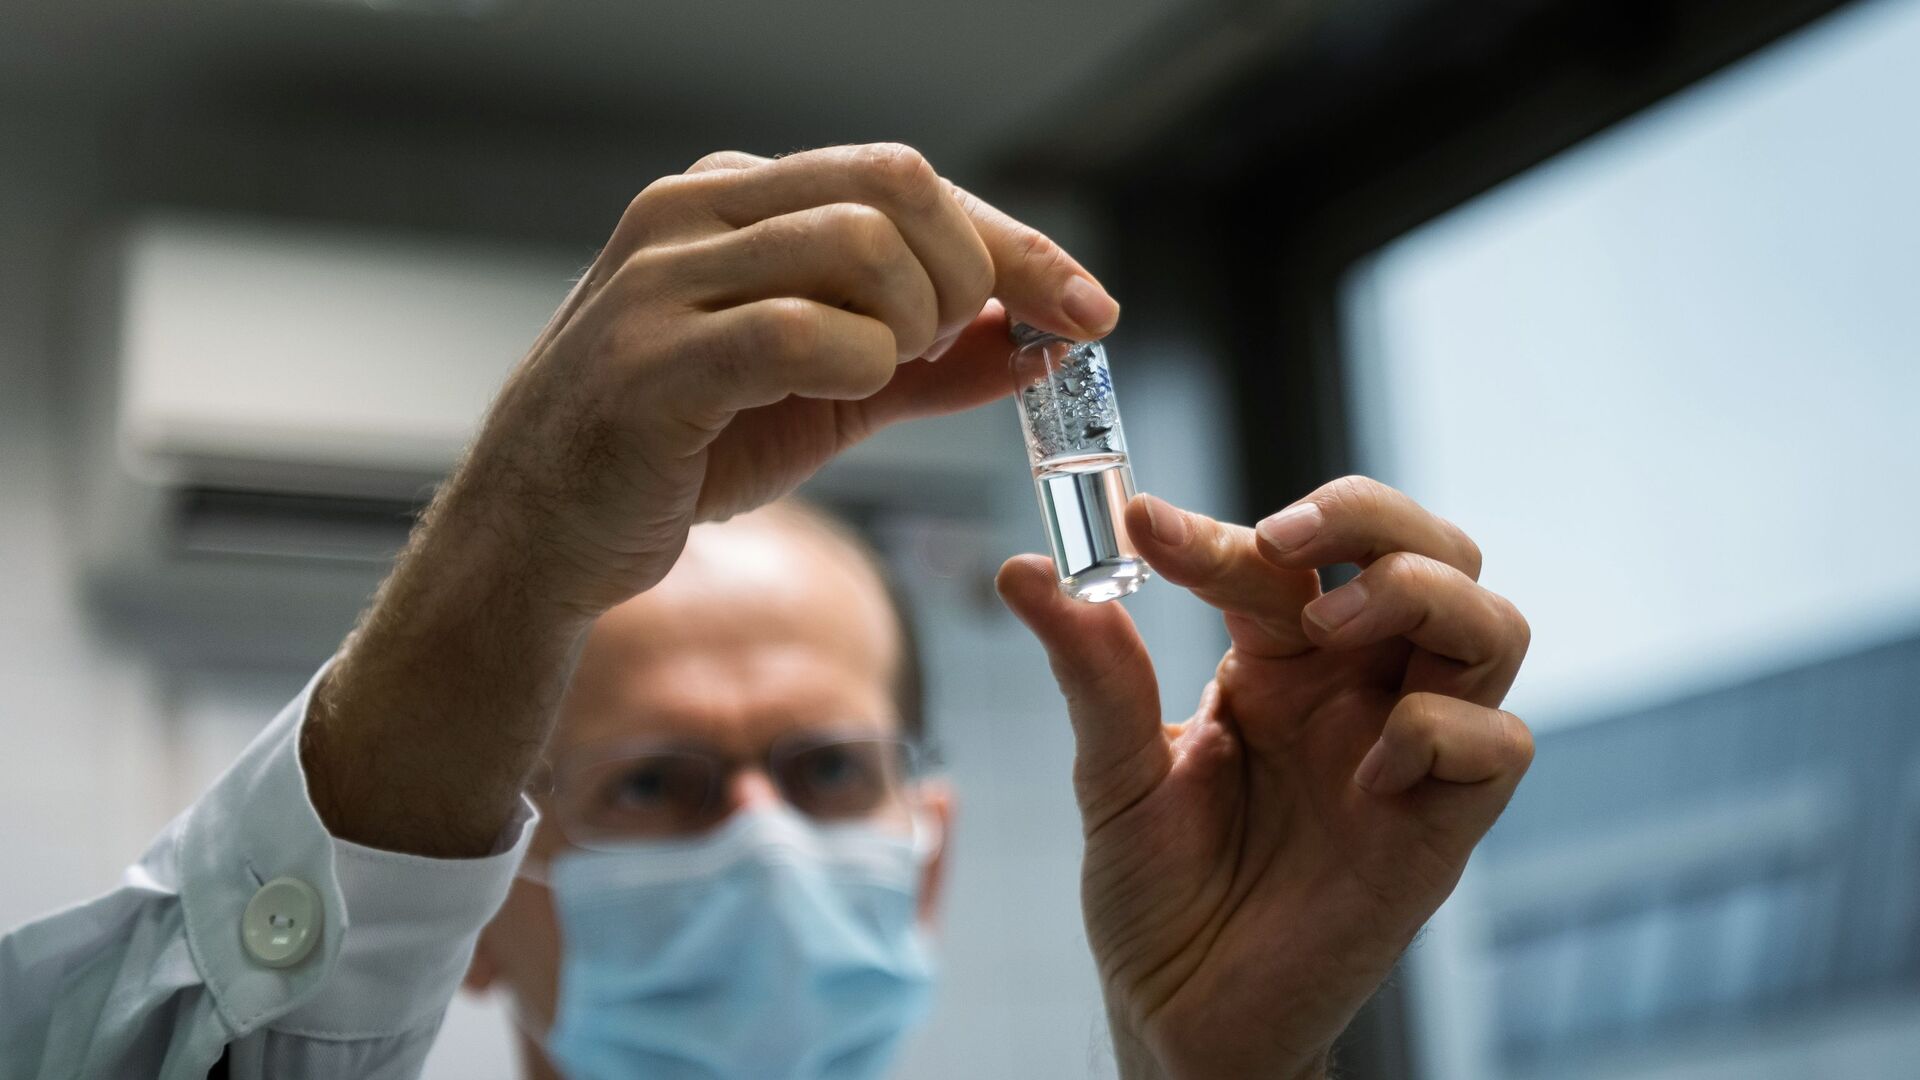 Российская вакцина от коронавируса Спутник V доставлена в Венгрию для клинических исследований (19 ноября 2020). Будапешт - Sputnik Արմենիա, 1920, 04.02.2021